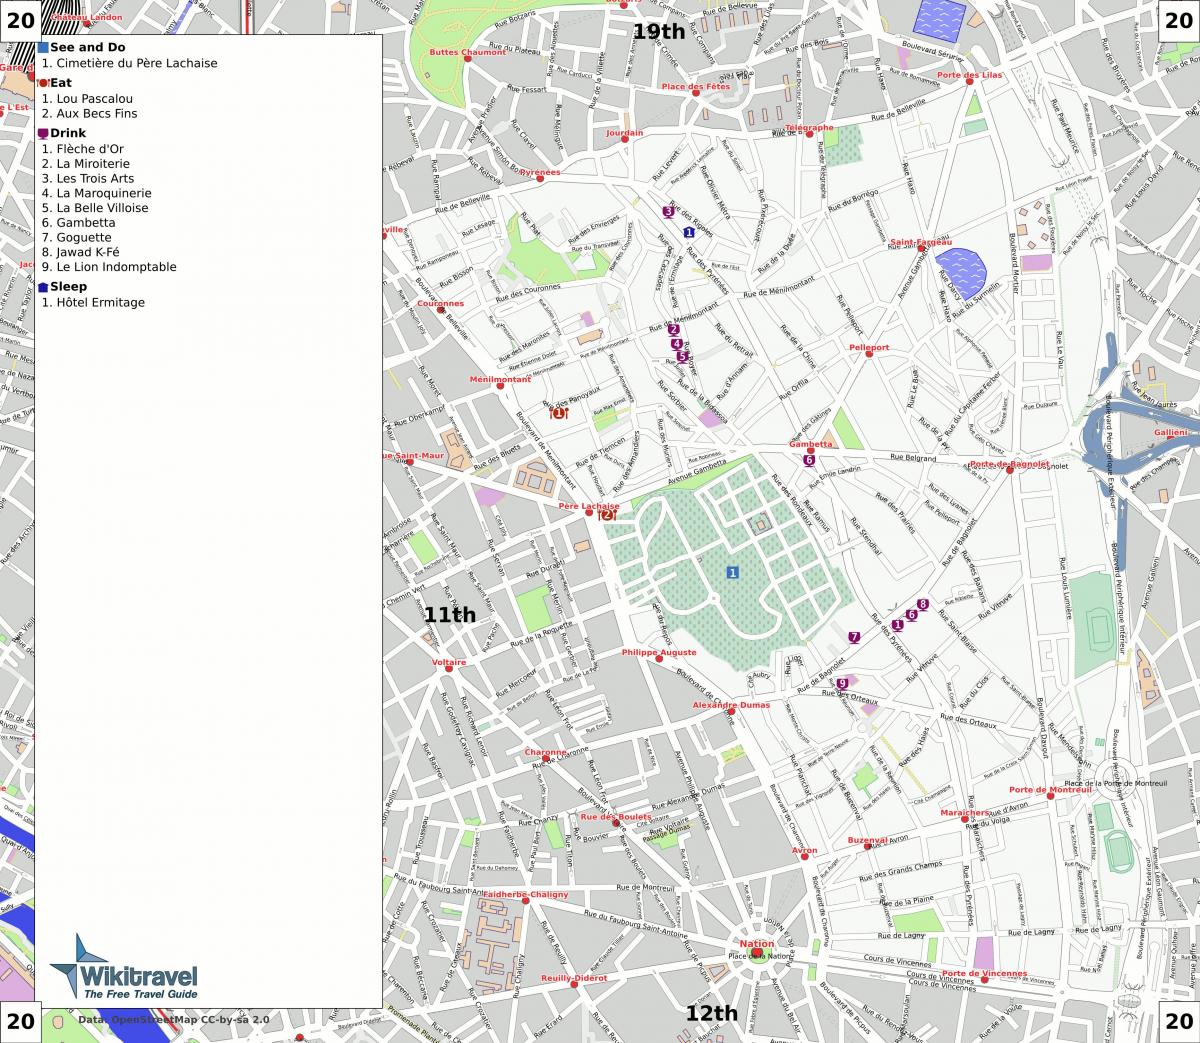 Kort over 20 arrondissement i Paris